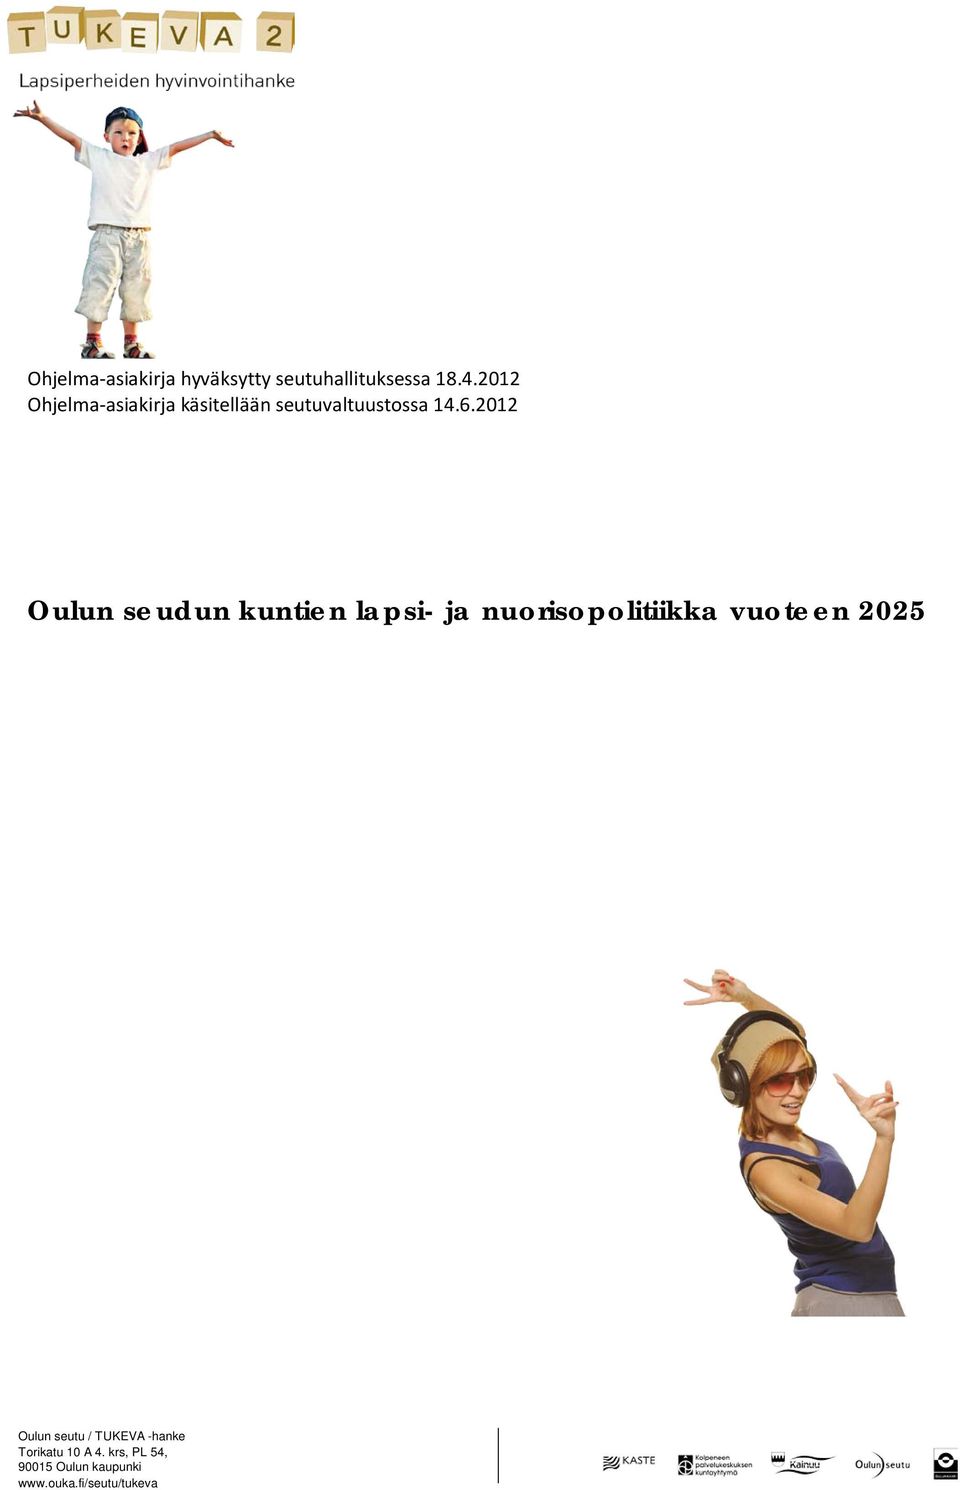 2012 Oulun seudun kuntien lapsi- ja nuorisopolitiikka vuoteen 2025